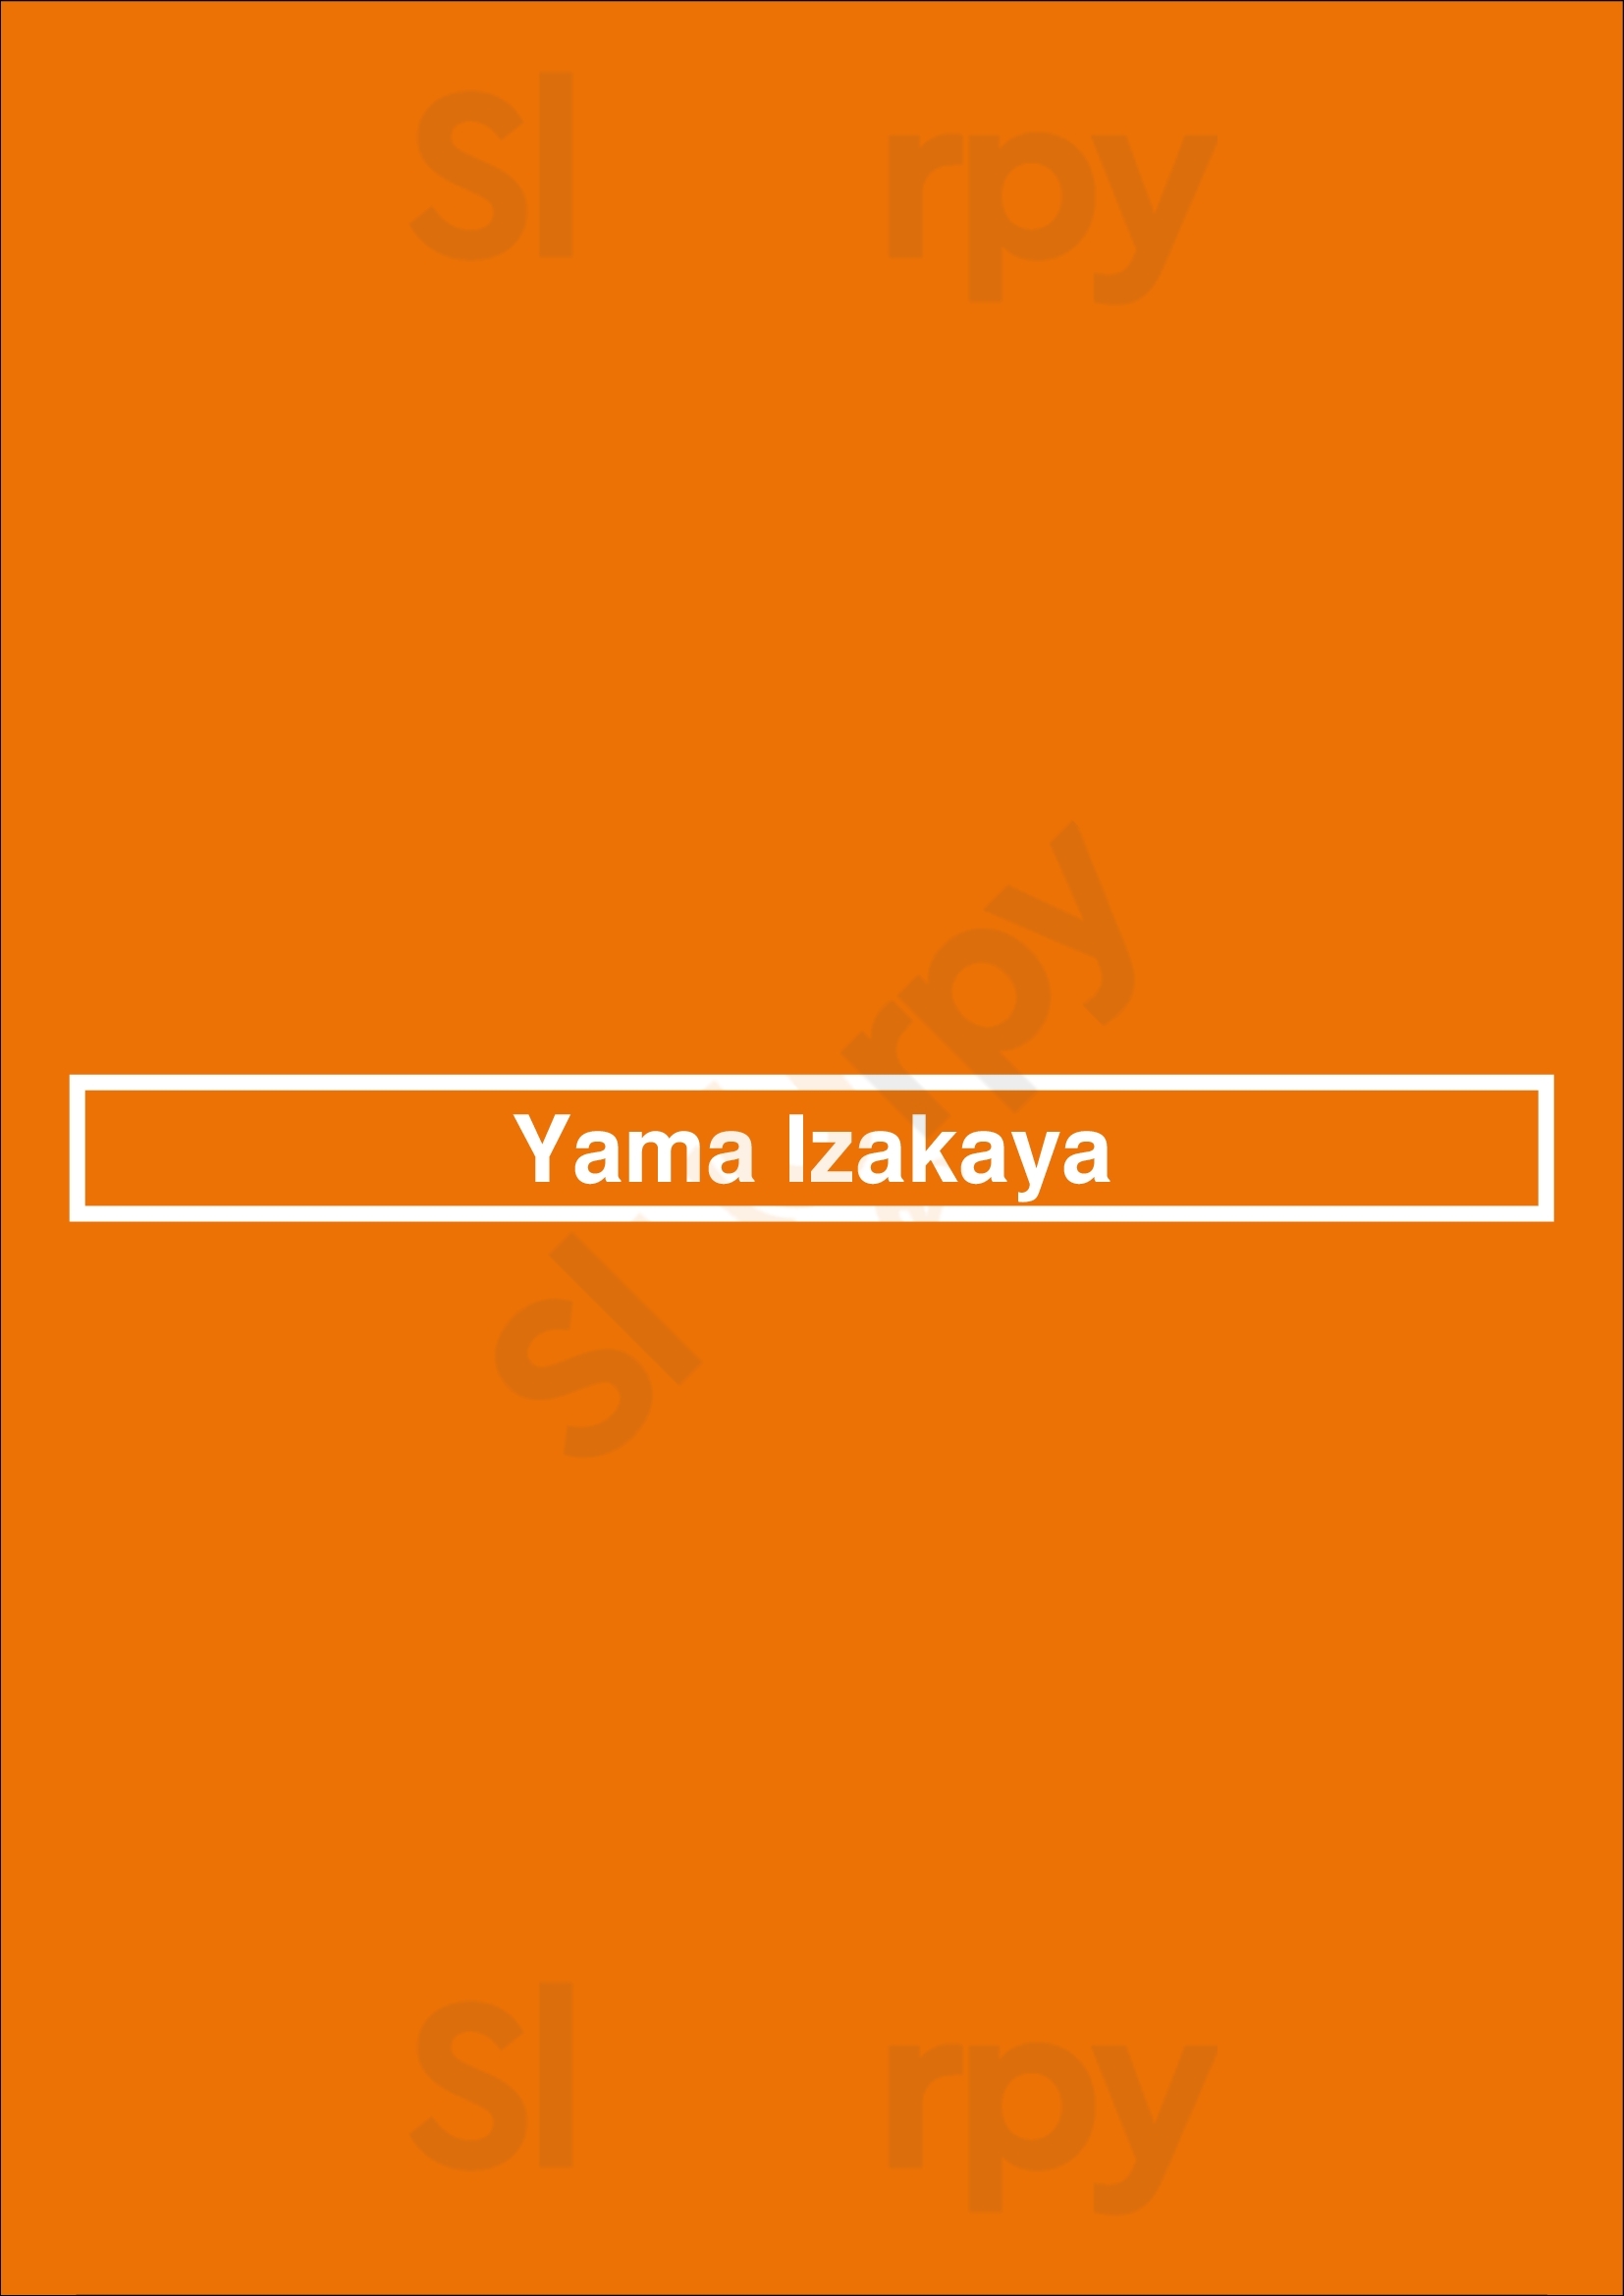 Yama Izakaya Charlotte Menu - 1